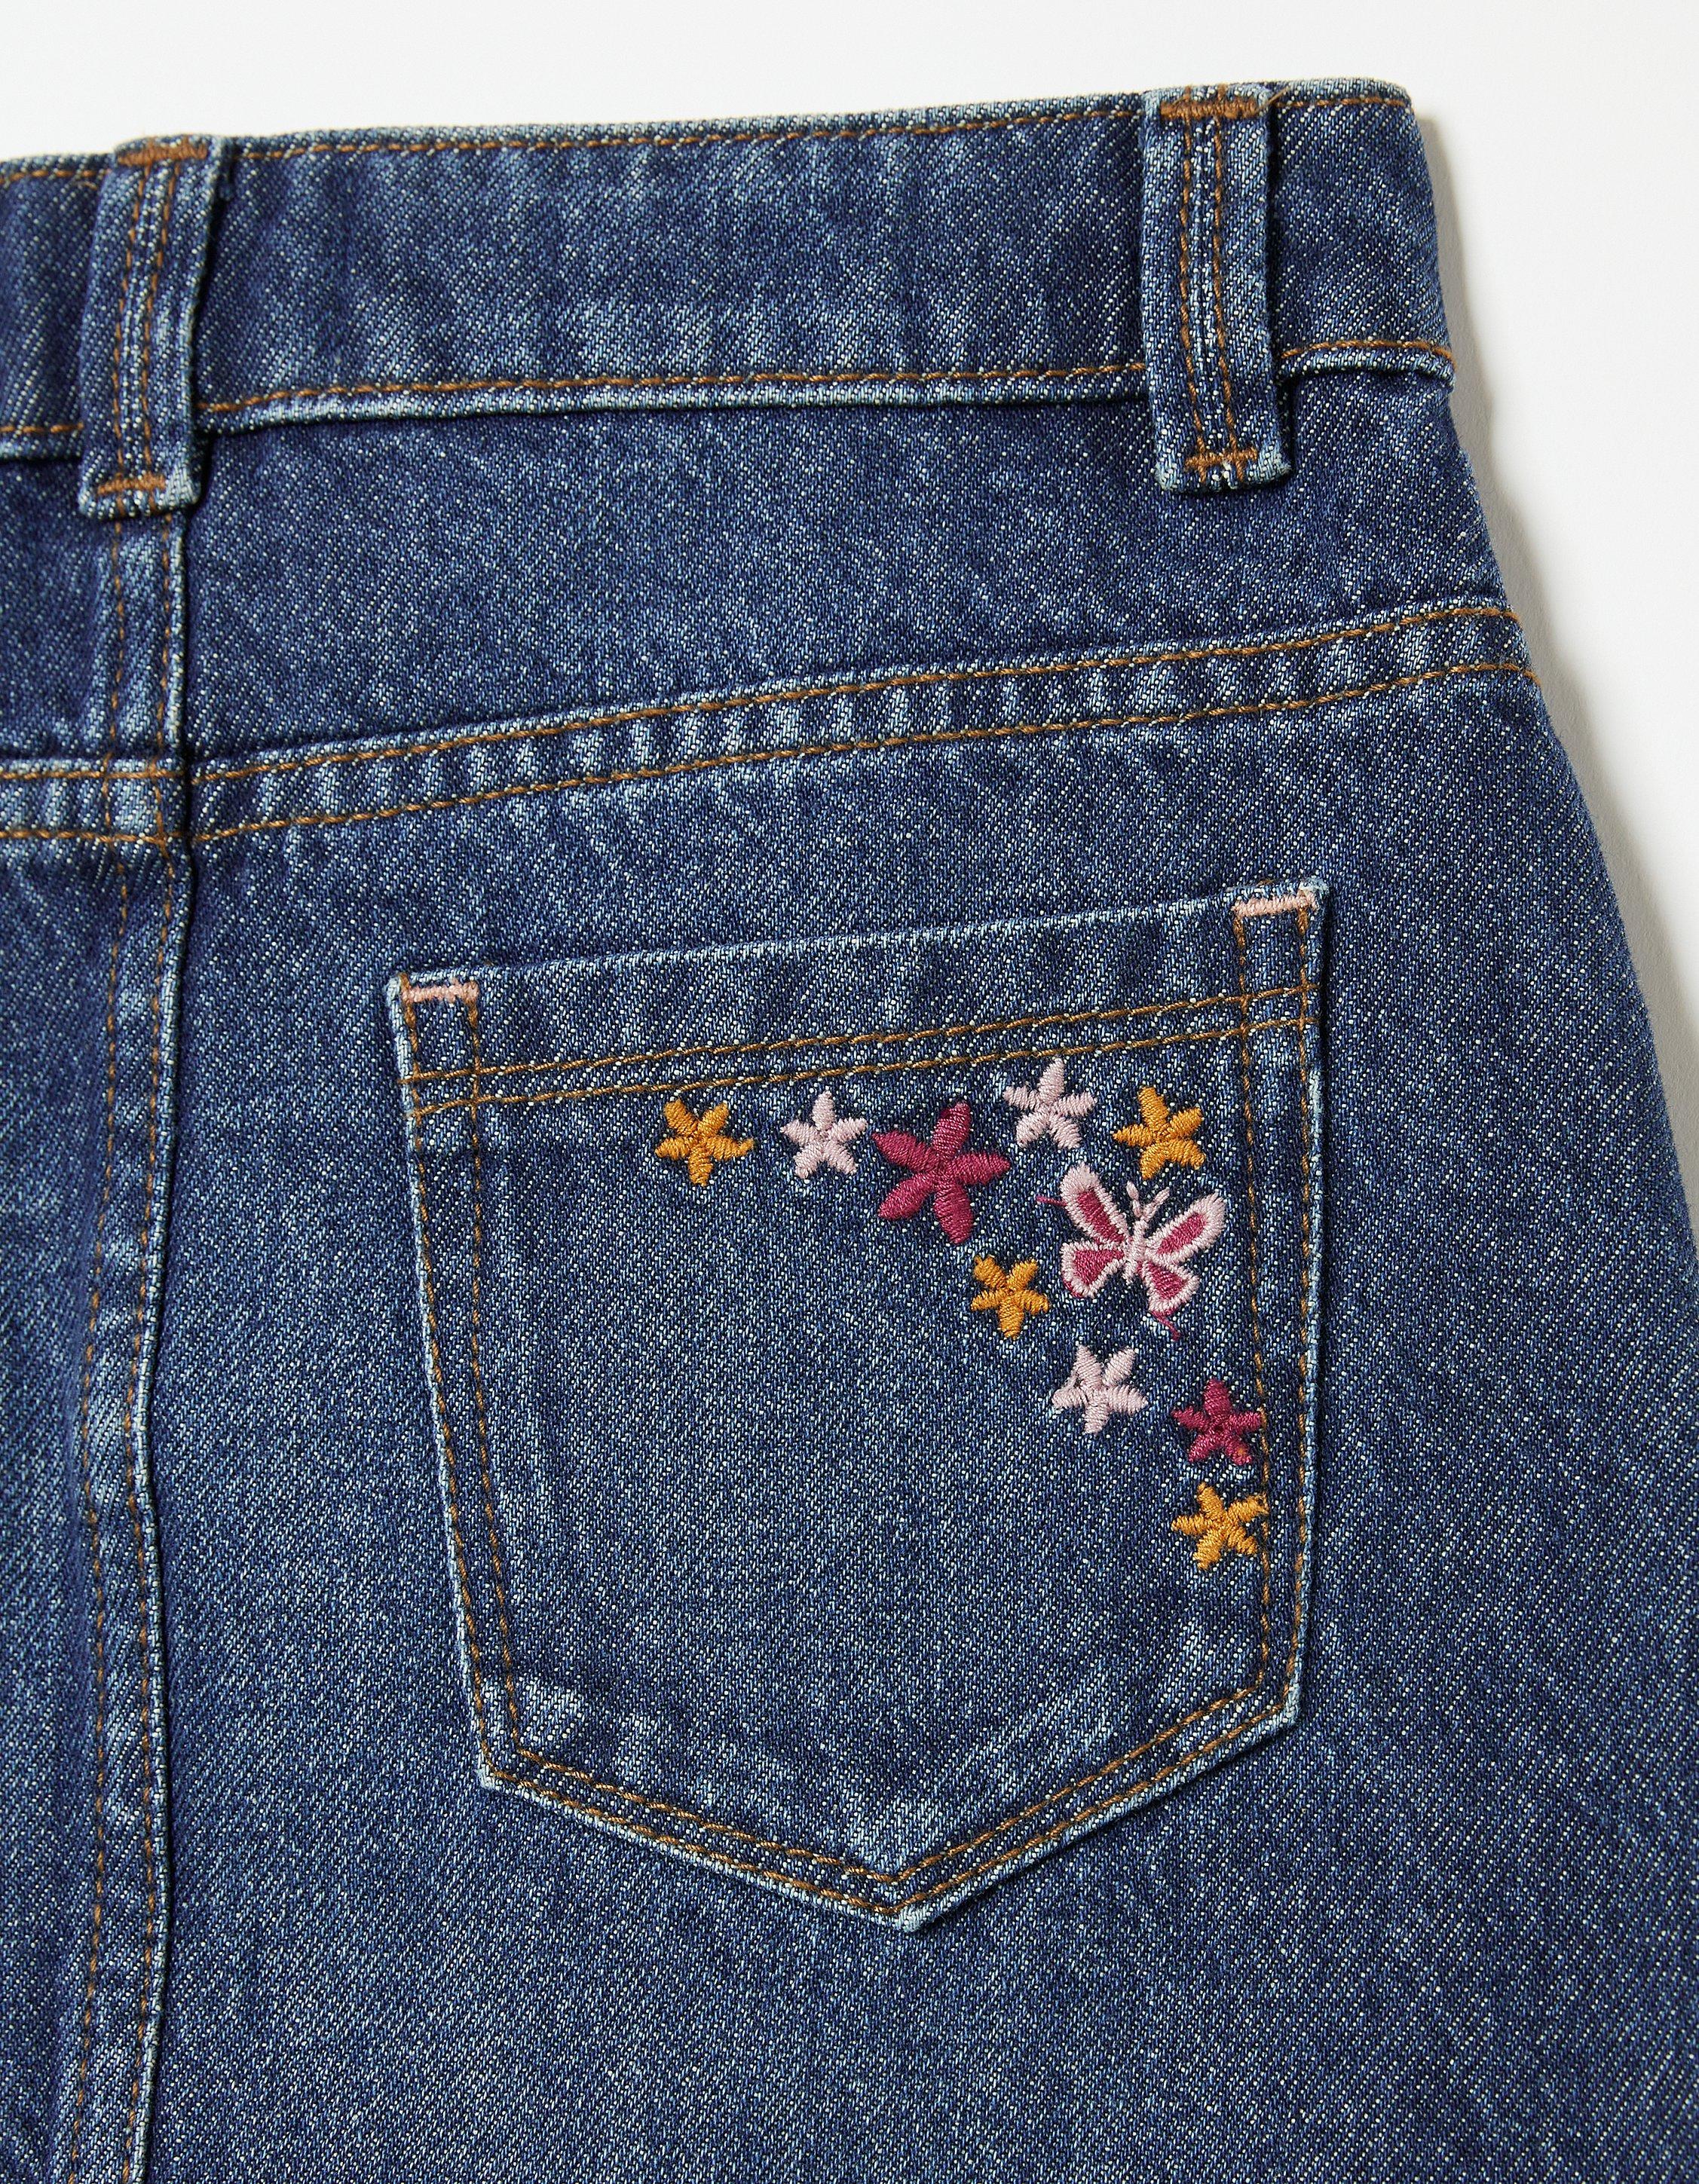 DIY Floral Embroidered Denim Jeans